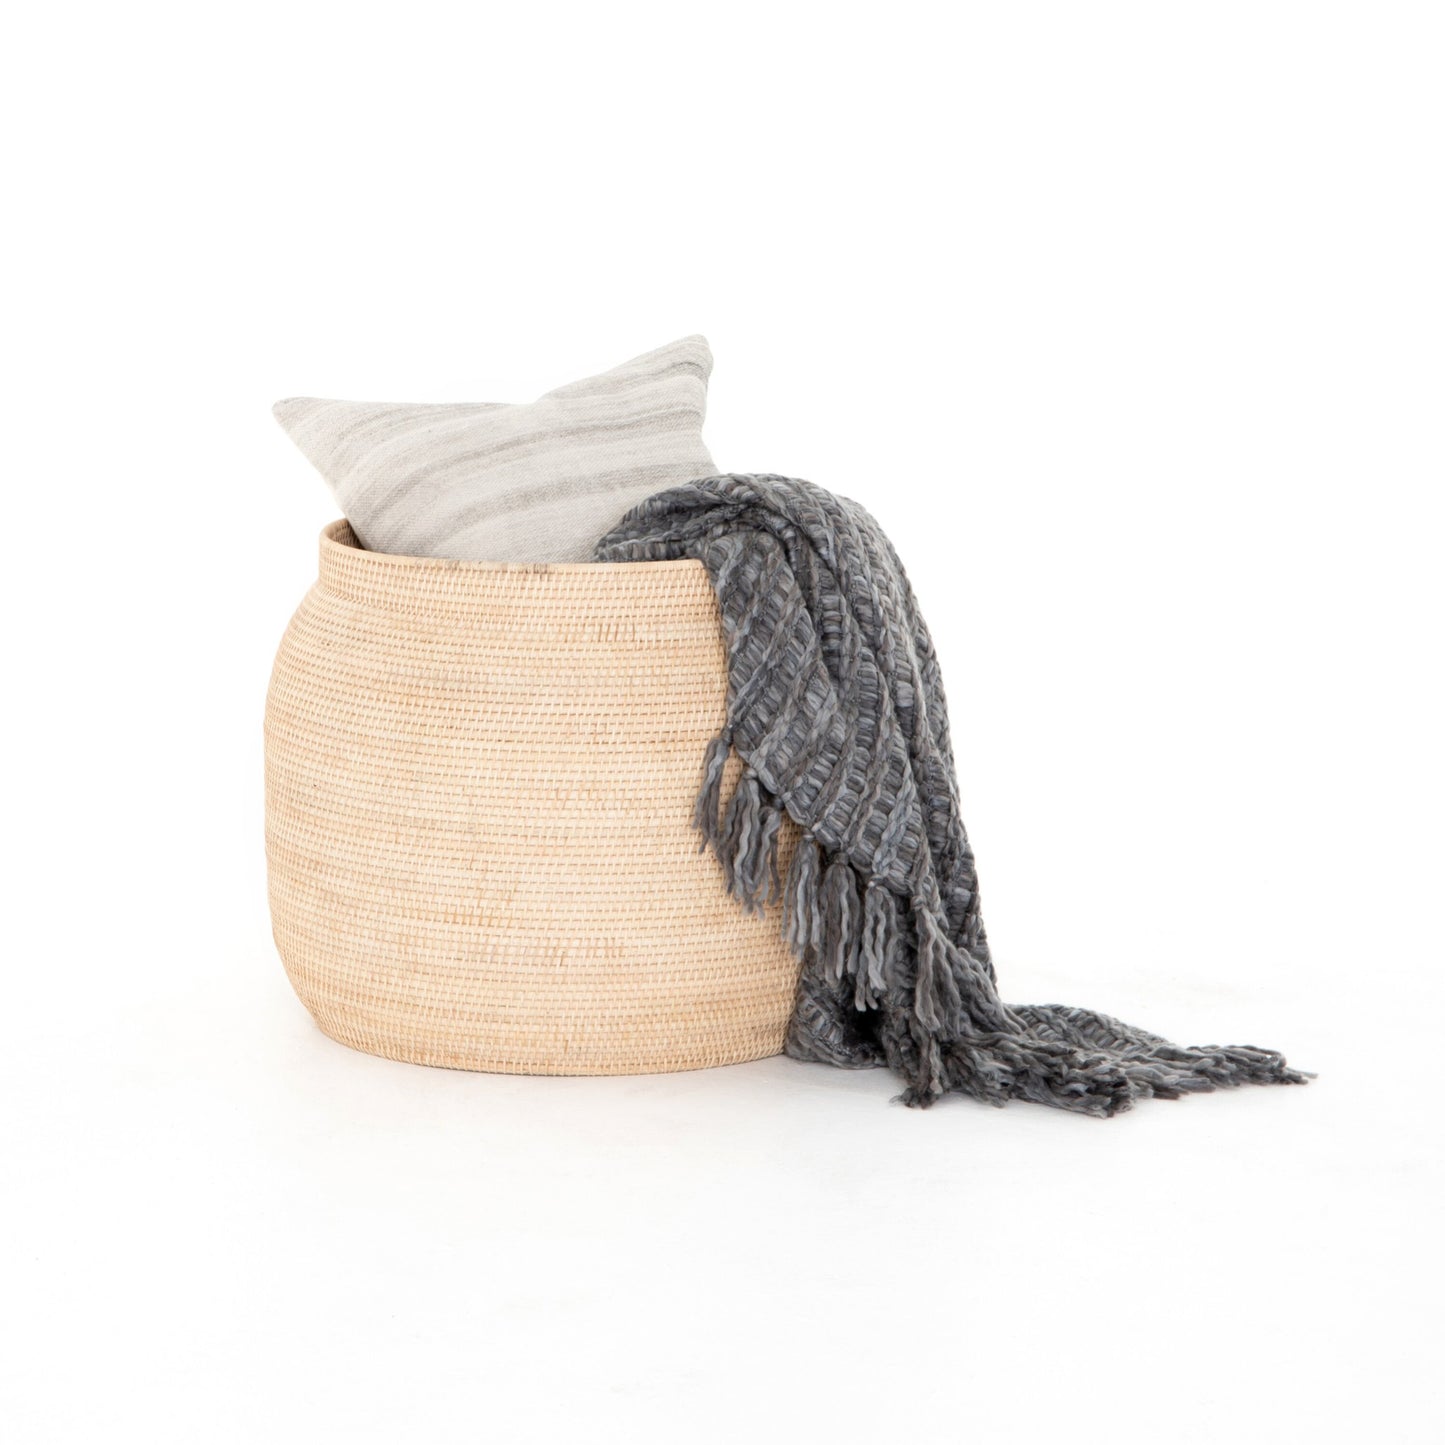 Ansel basket-natural lombok weave